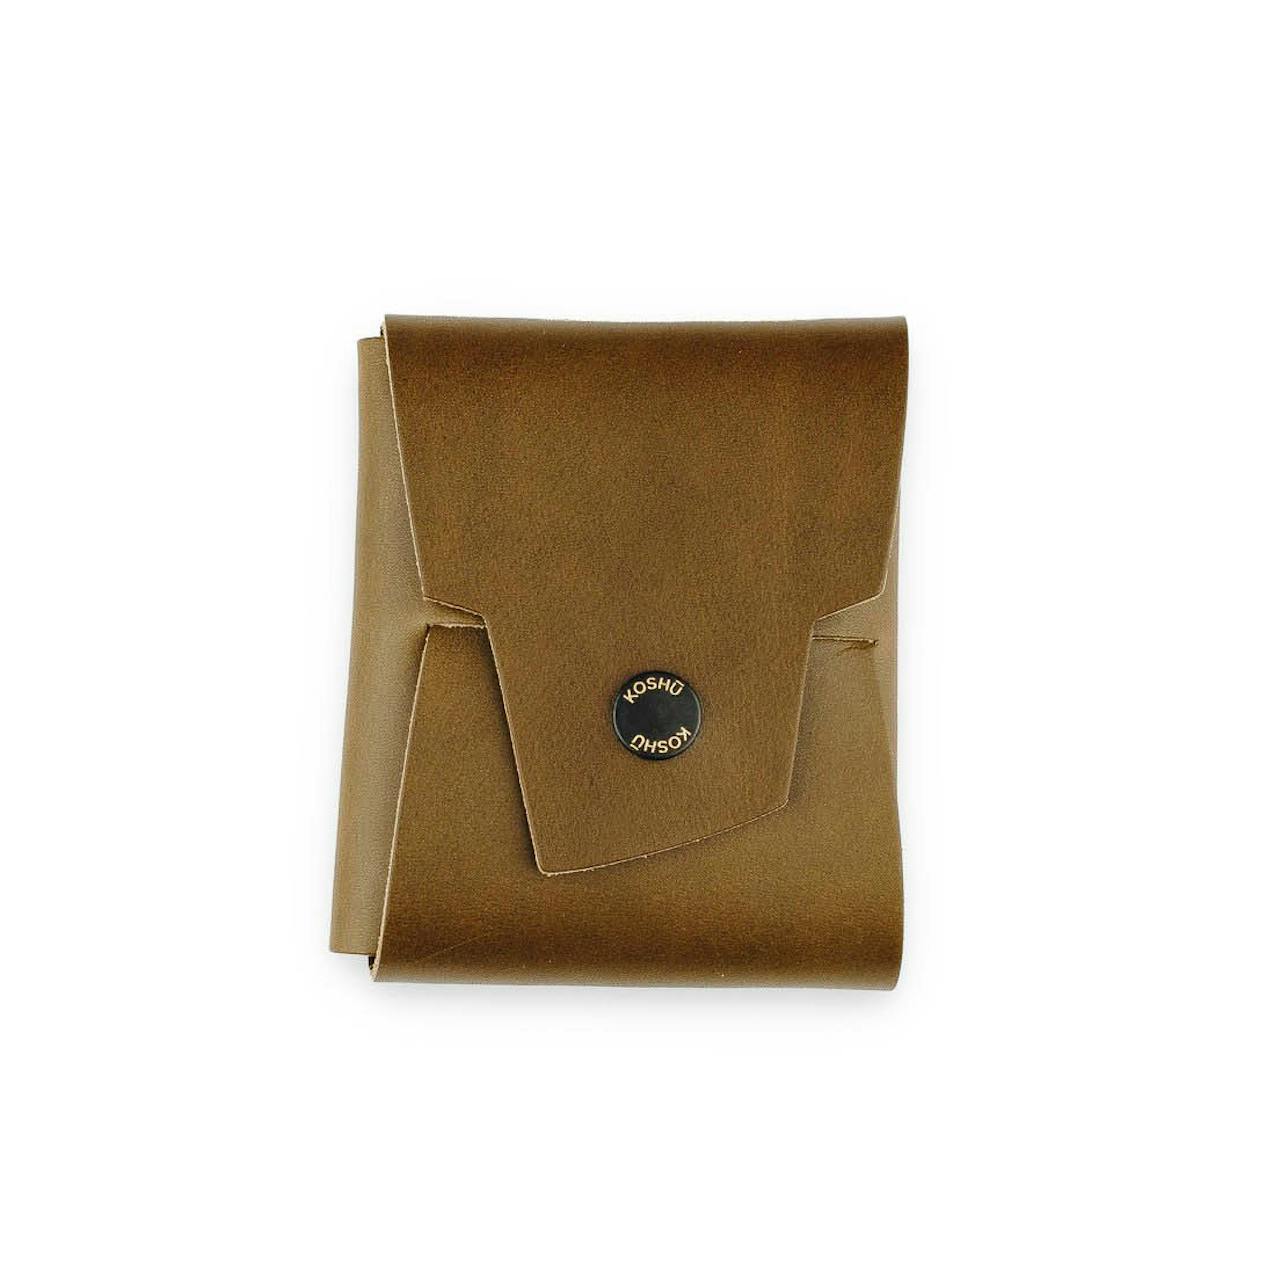 Koshu Origami Leather Wallet